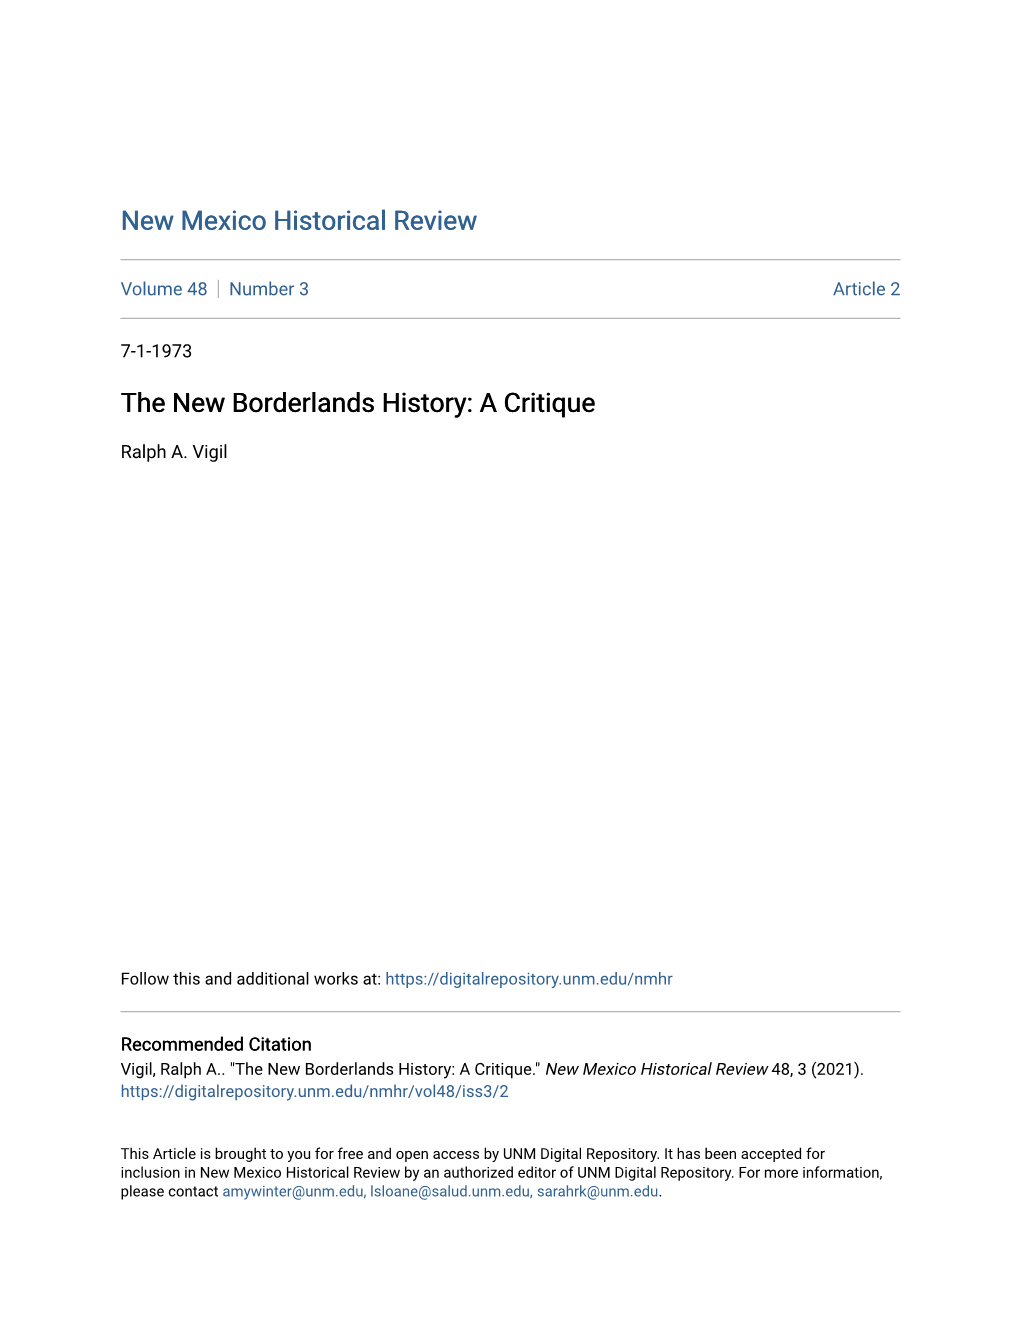 The New Borderlands History: a Critique